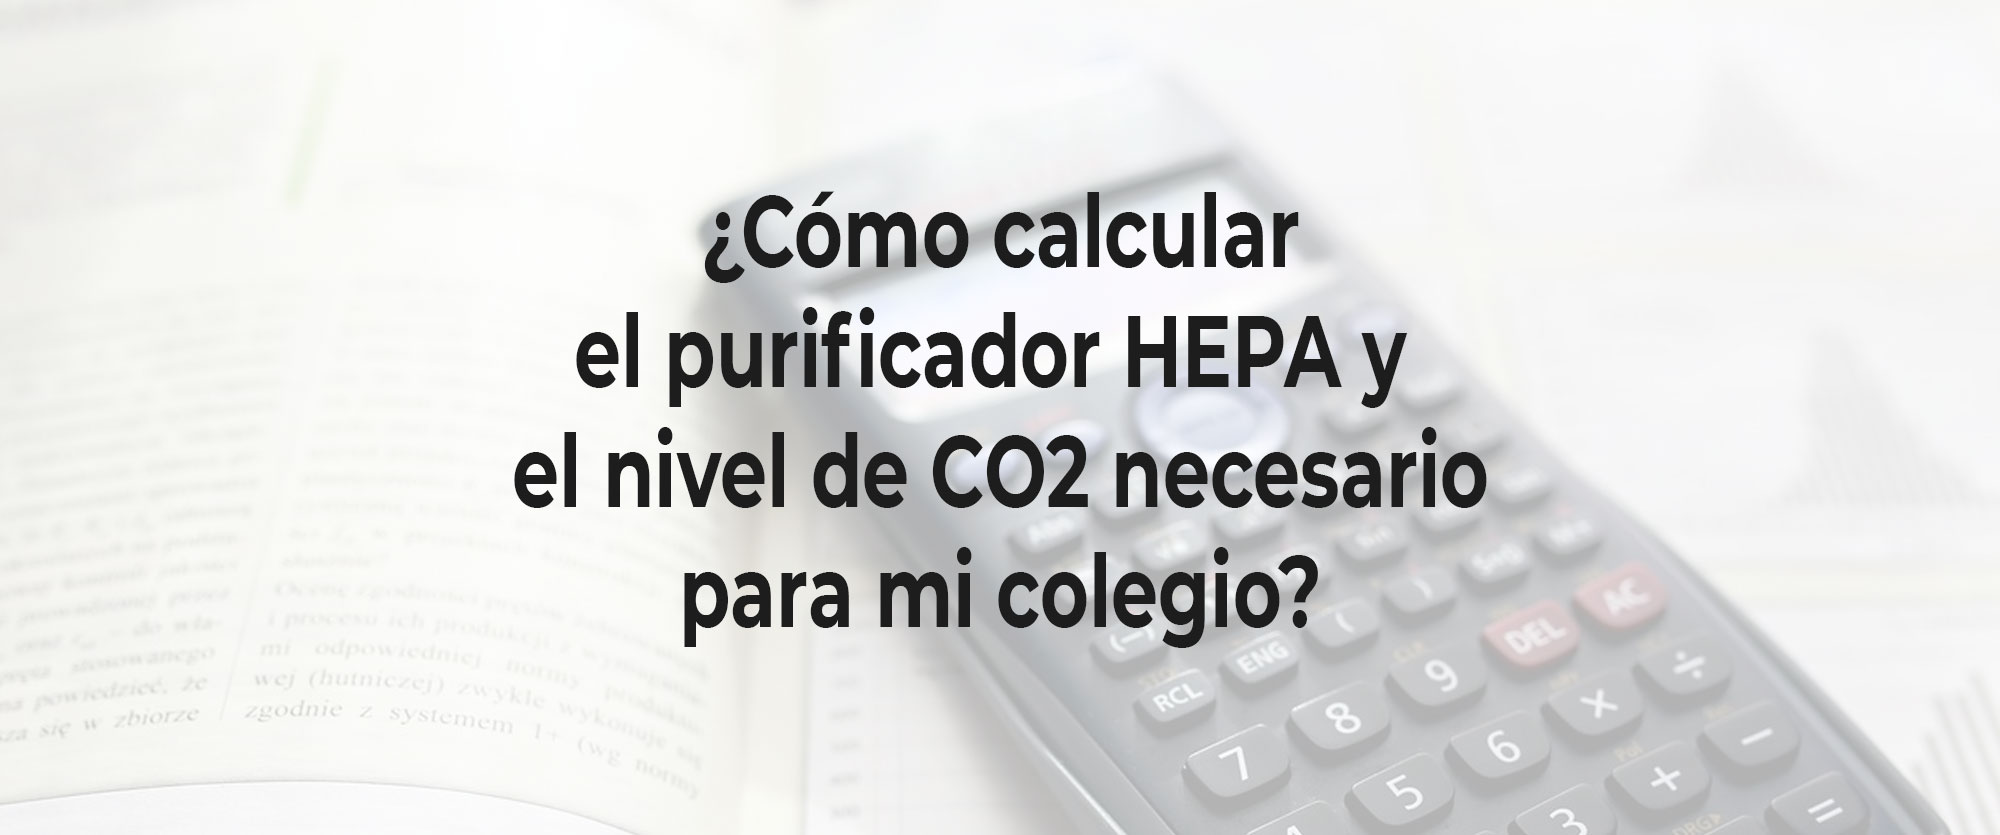 Cómo calcular el purificador HEPA y el nivel de CO2 para mi colegio